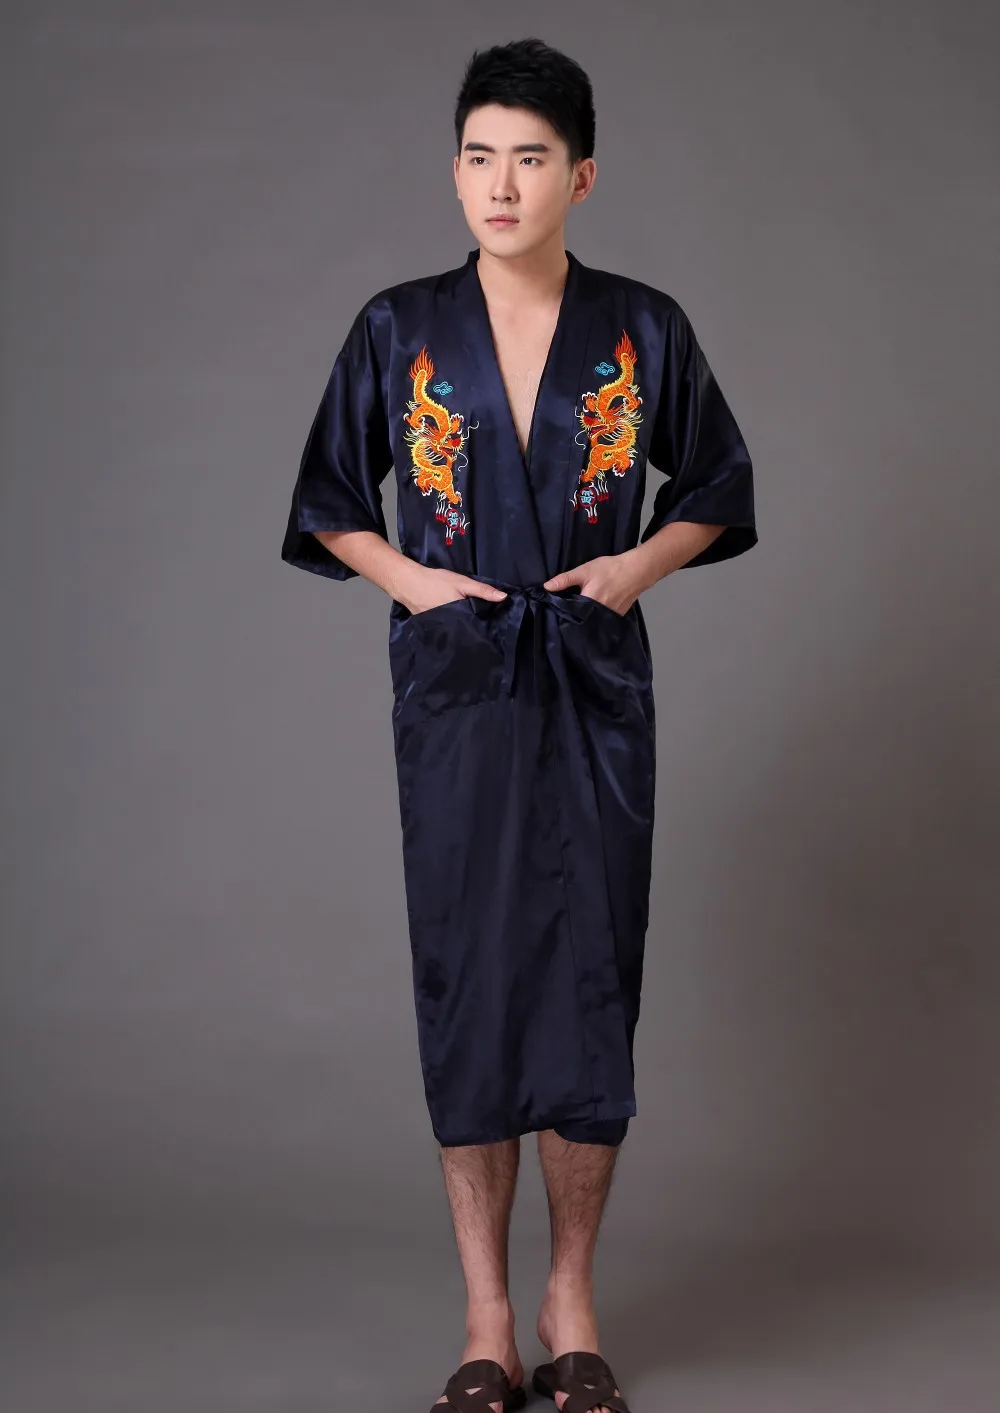 Традиционный китайский мужской халат шелковый атлас пижамы Вышивка Дракон кимоно юката банное платье Размеры S M L XL XXL XXXL Z005